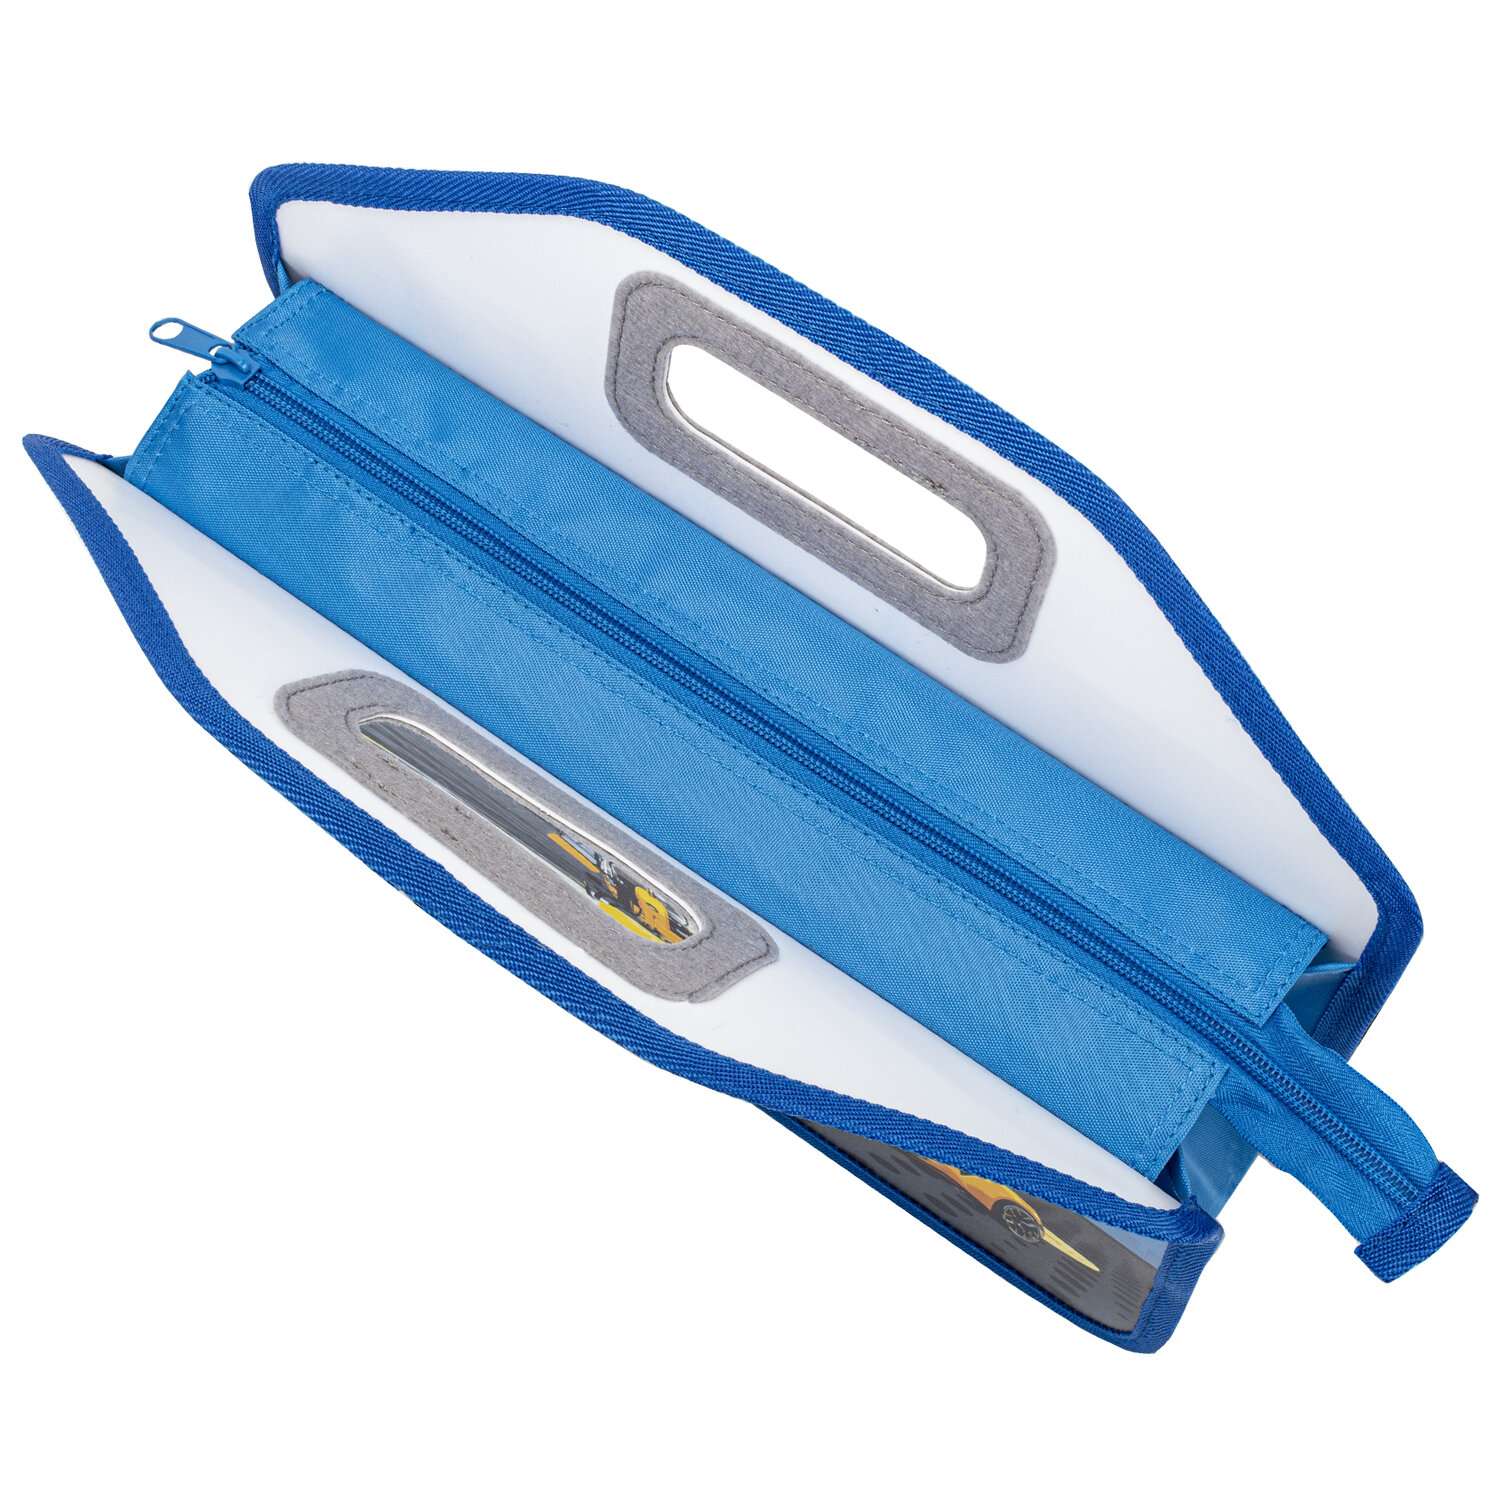 Папка-сумка Юнландия портфель для документов бумаг тетрадей для школы канцелярская с ручками на молнии - фото 5